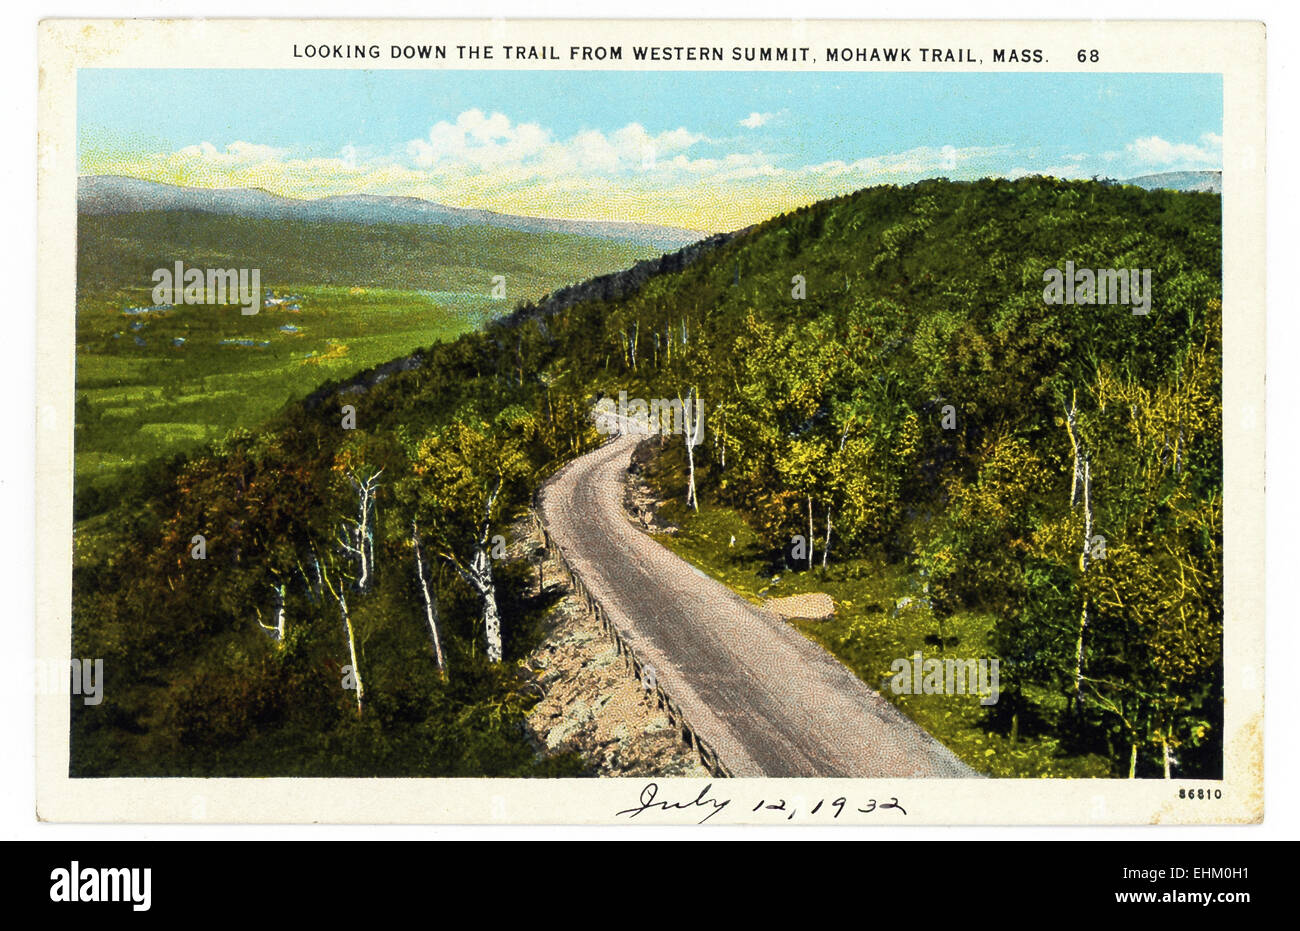 Ce millésime 1930 carte postale montre la vue de dessus le sentier à partir du sommet de l'Ouest le Mohawk Trail dans le Massachusetts. Banque D'Images